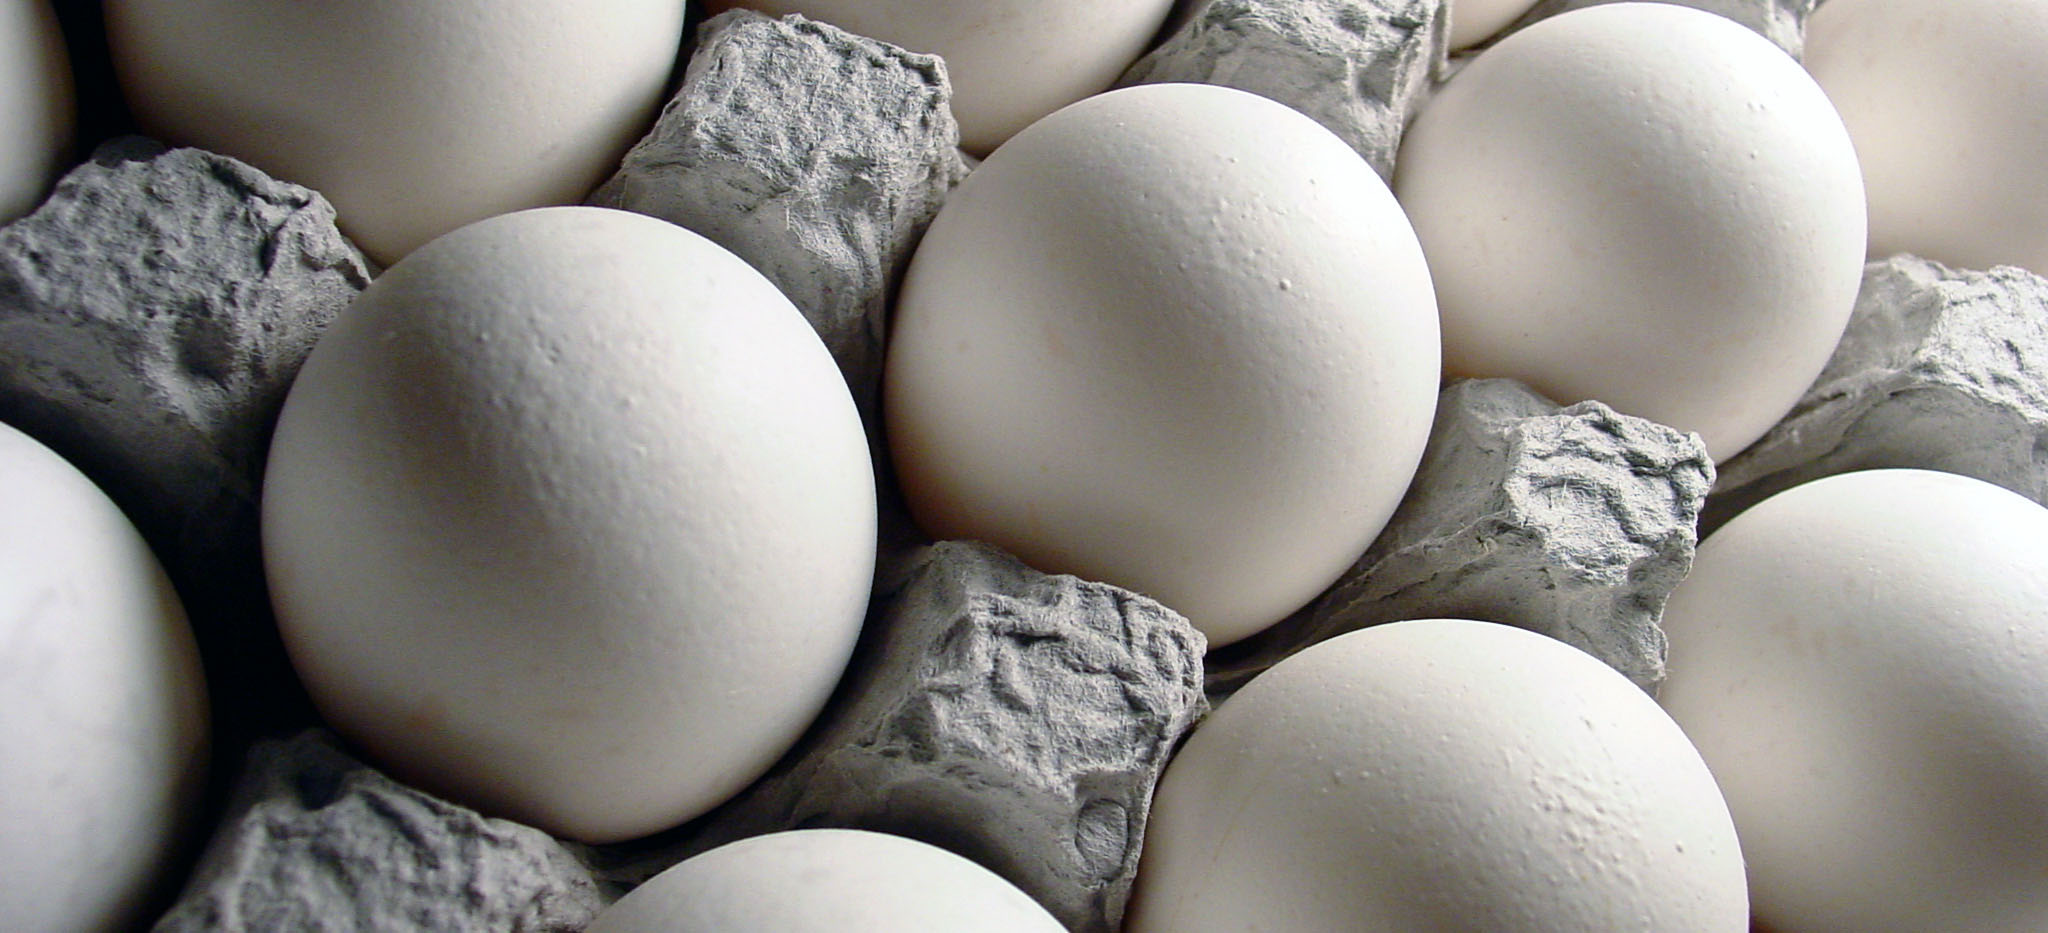 ایران مقام دهم تولید تخم مرغ در جهان را داراست